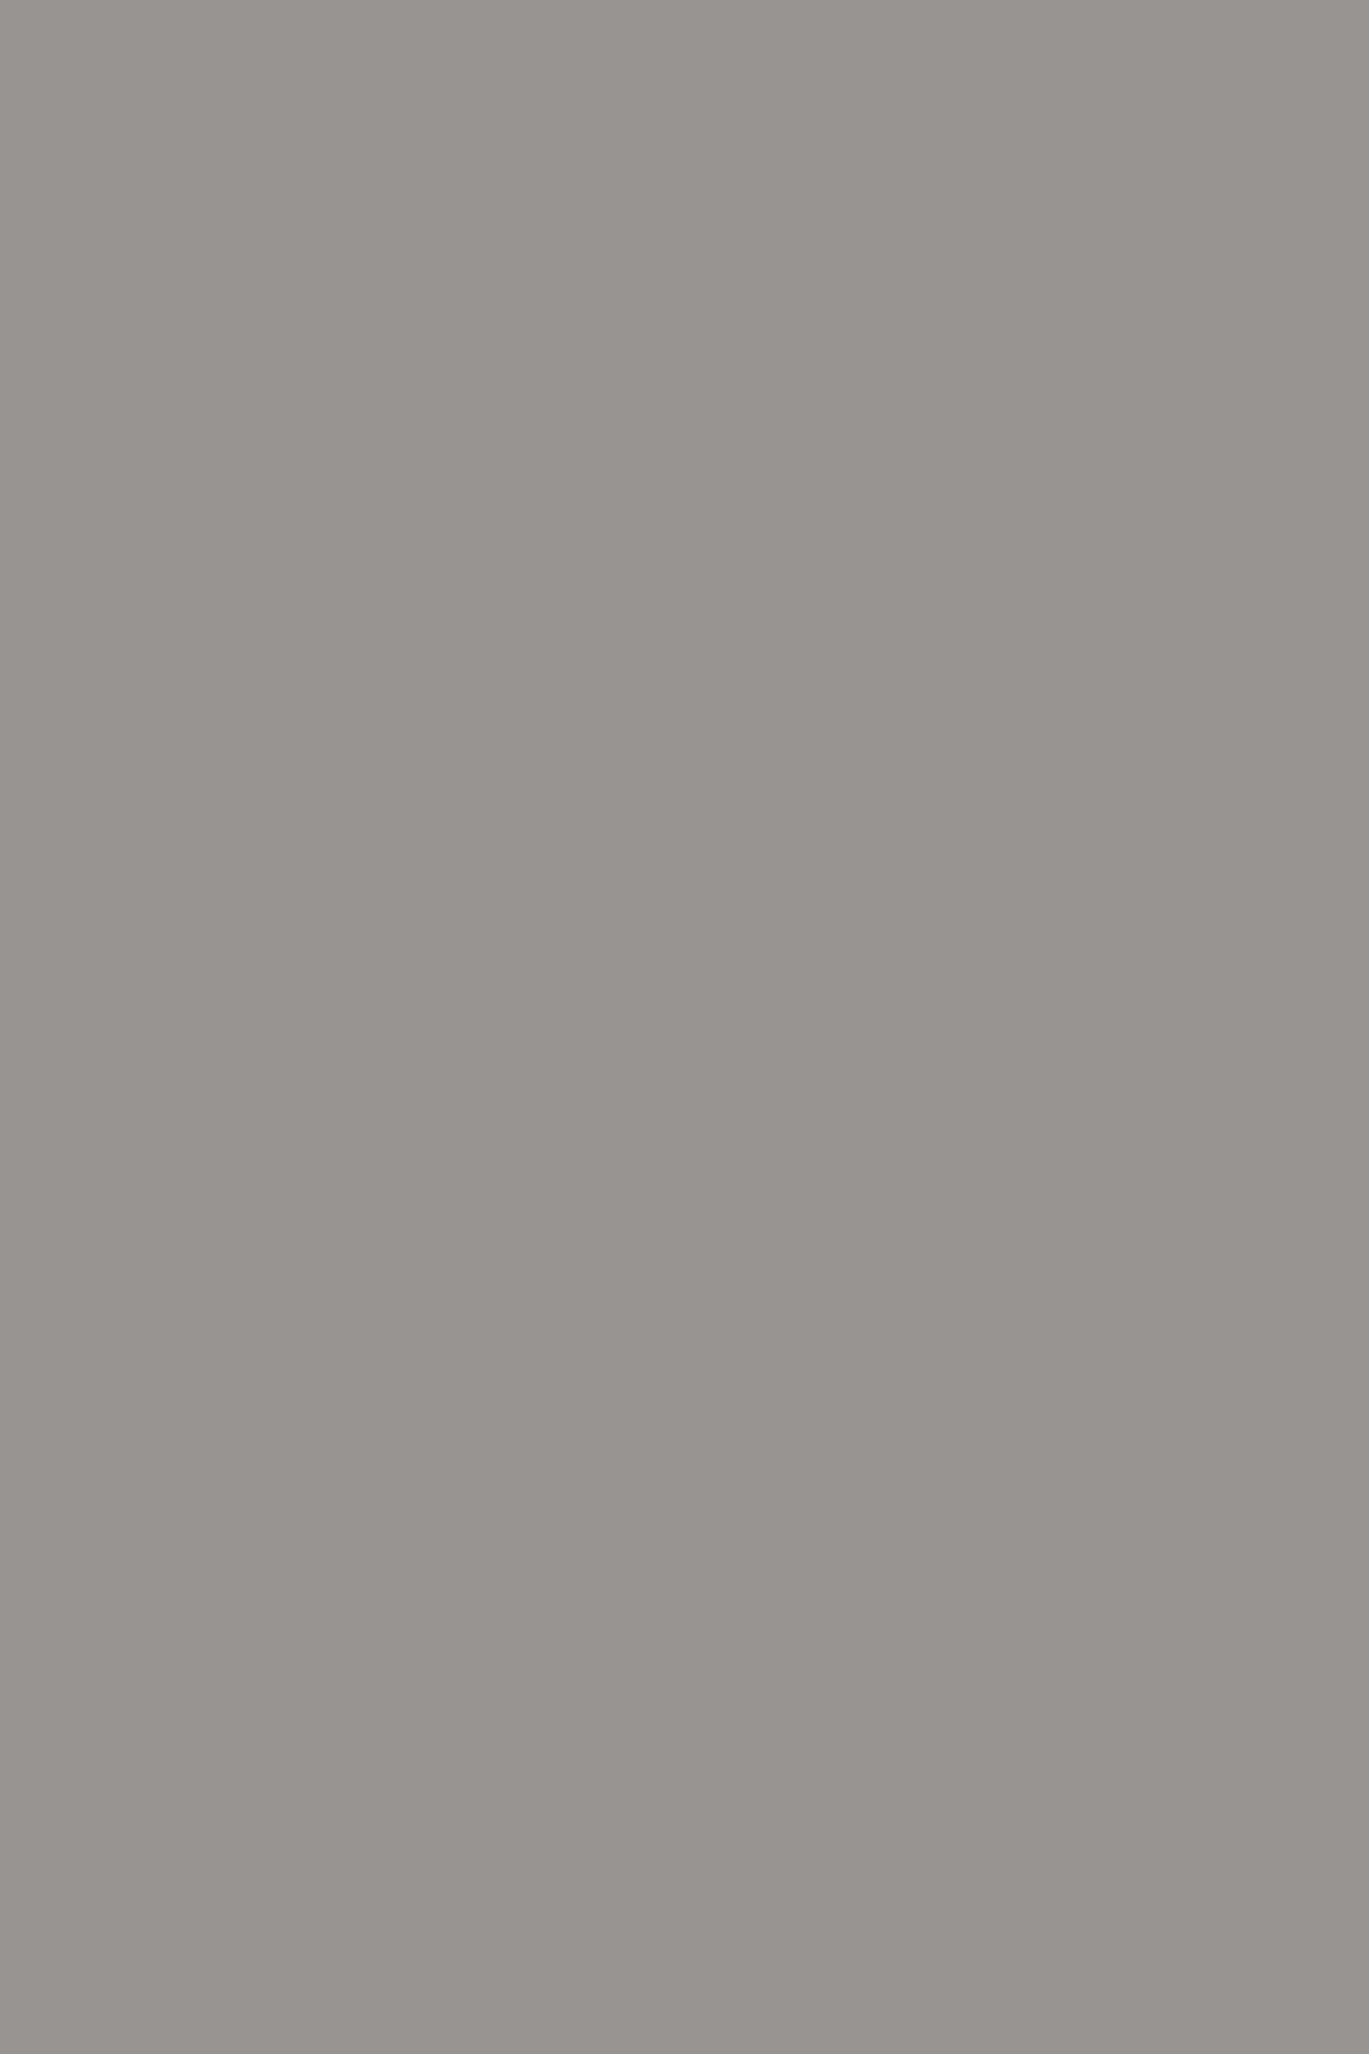 Скульптура «Алеутская женщина». Серия «Народности России». 1913. Государственный Эрмитаж, Санкт-Петербург